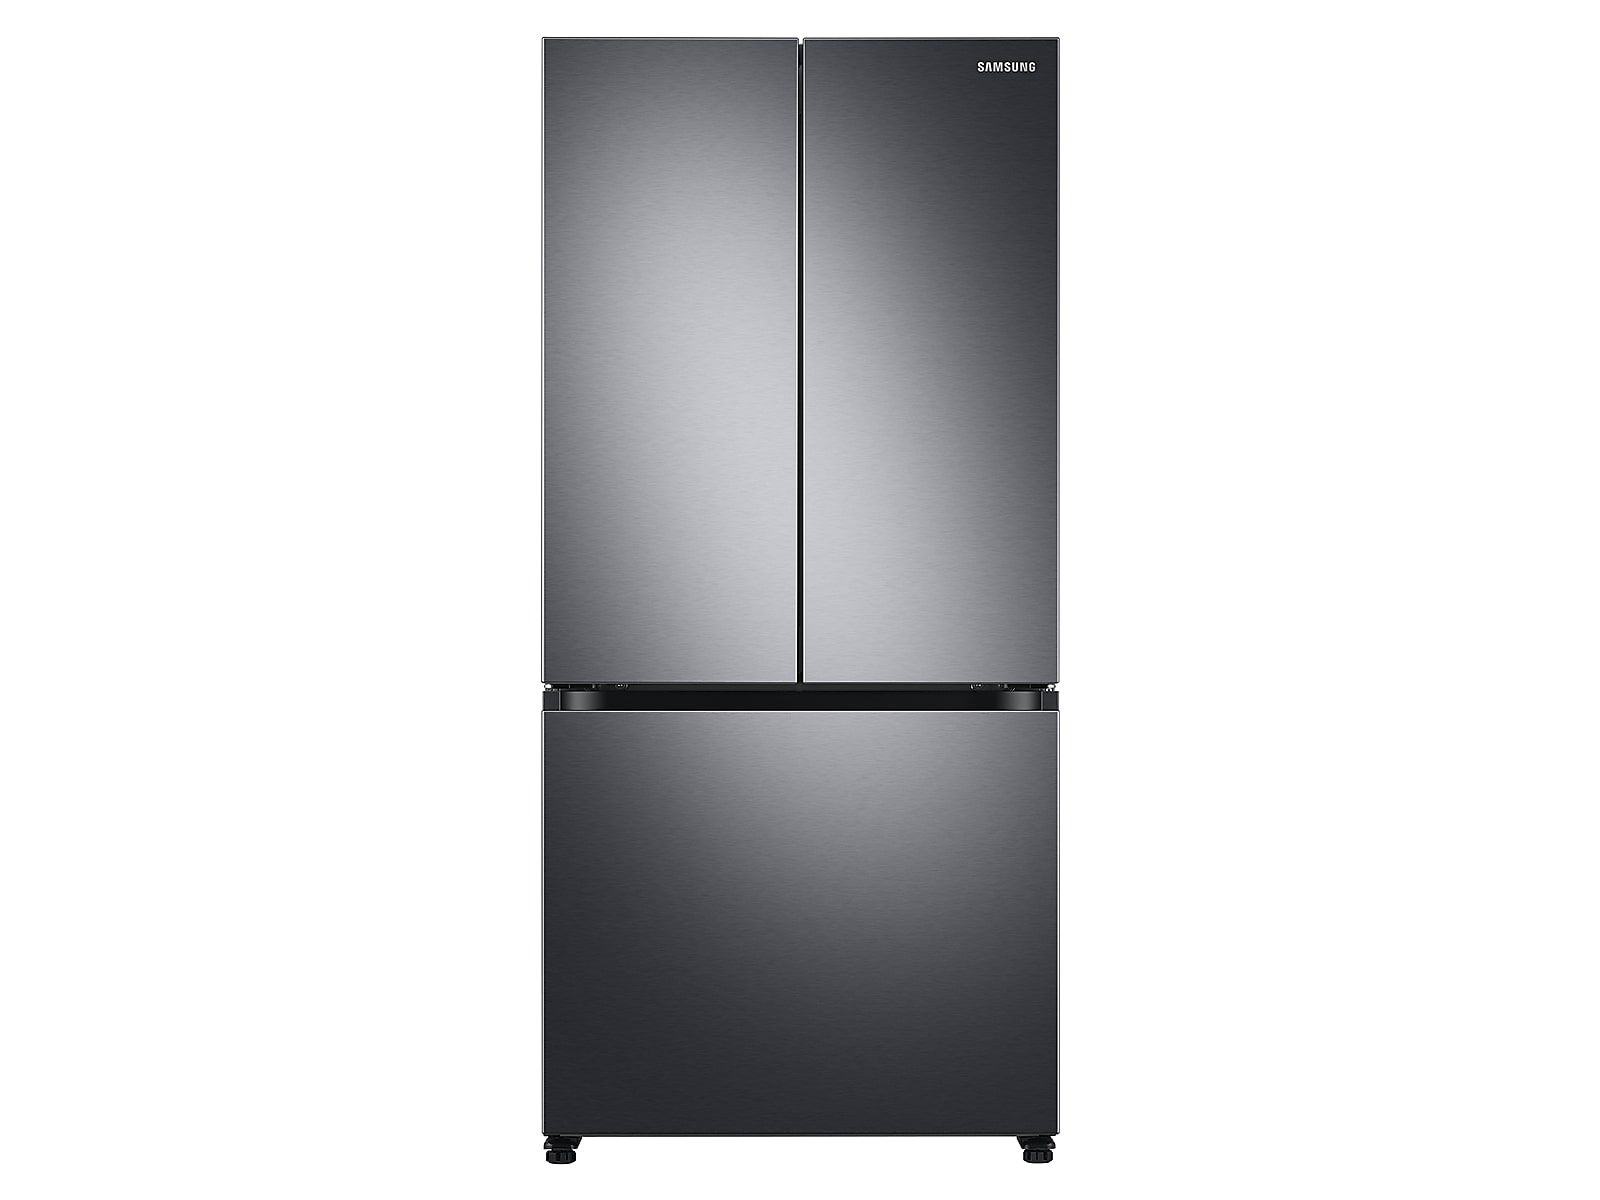 Samsung 19.5 cu. ft. Smart 3-Door French Door Refrigerator in Black Stainless Steel(RF20A5101SG/AA)